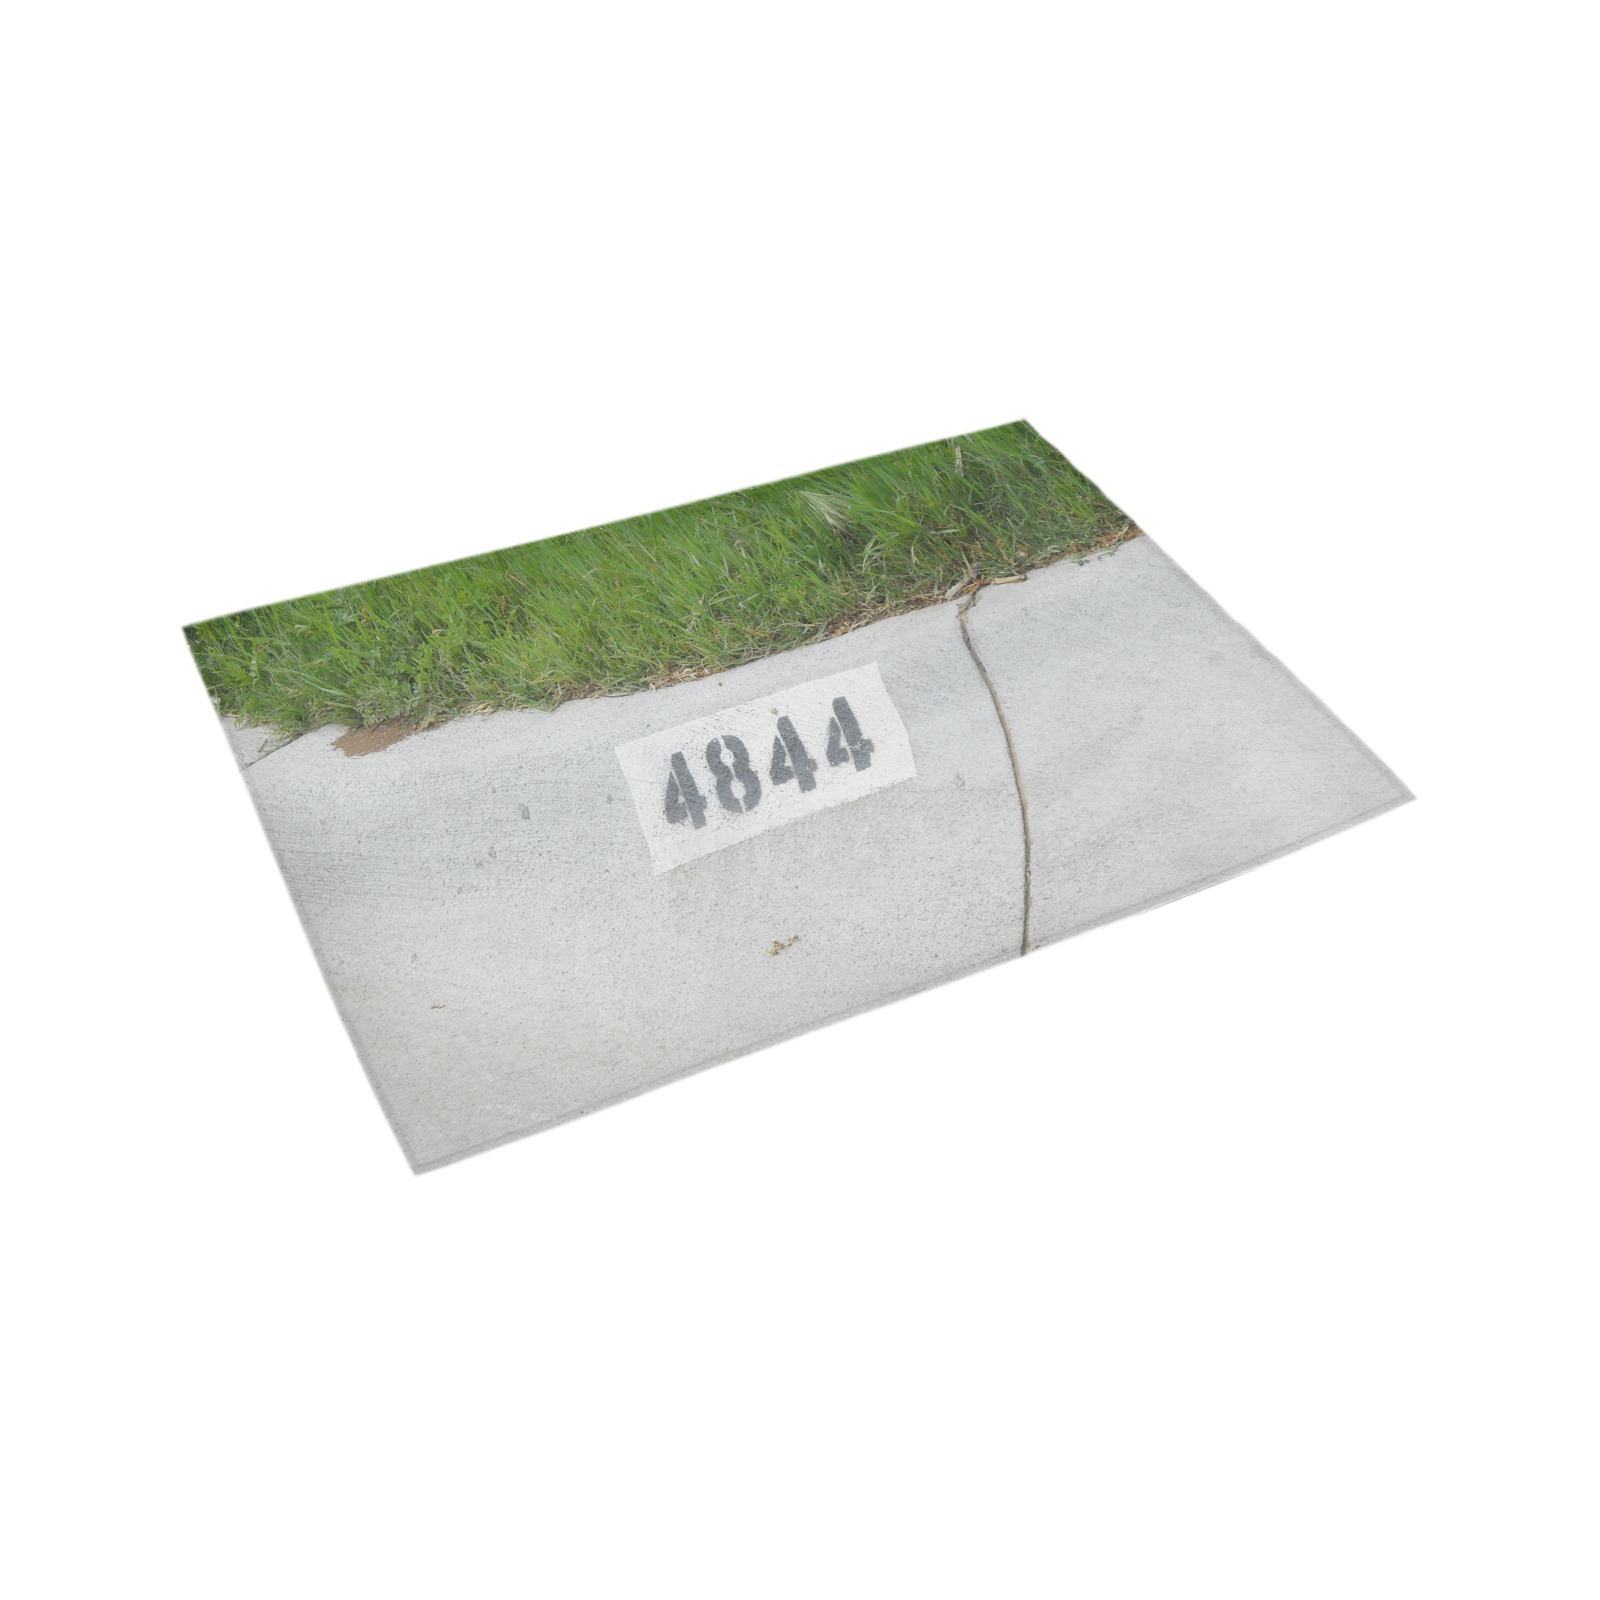 Street Number 4844 Azalea Doormat 24" x 16" (Sponge Material)